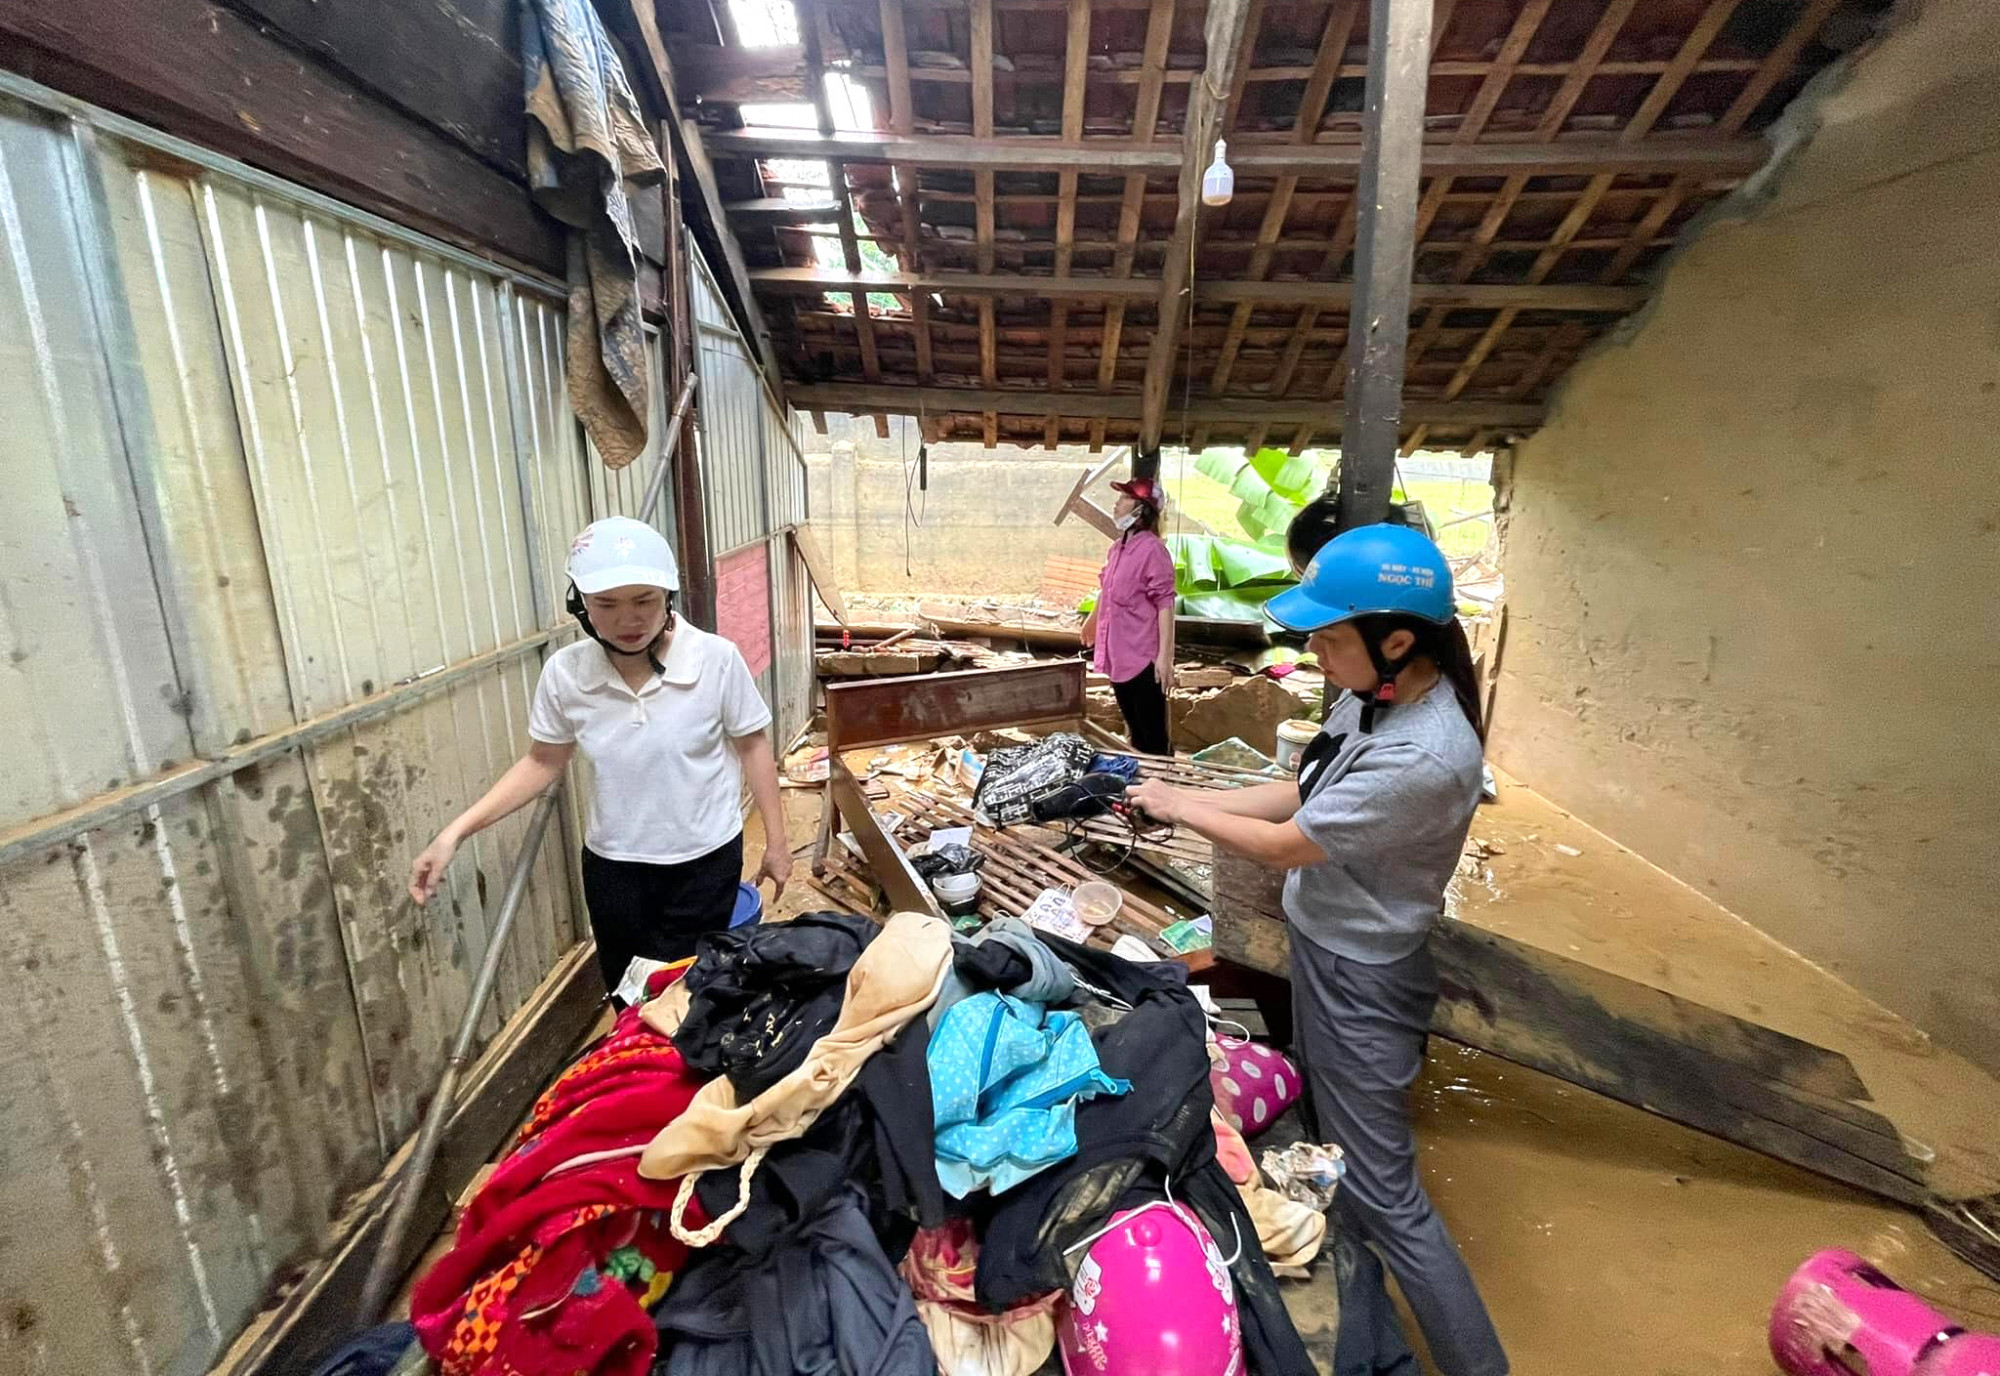 Giáo dục pháp luật - Nhói lòng cảnh trường học tan hoang, sách vở của học sinh lẫn trong bùn đất sau trận lũ ở Nghệ An (Hình 2).